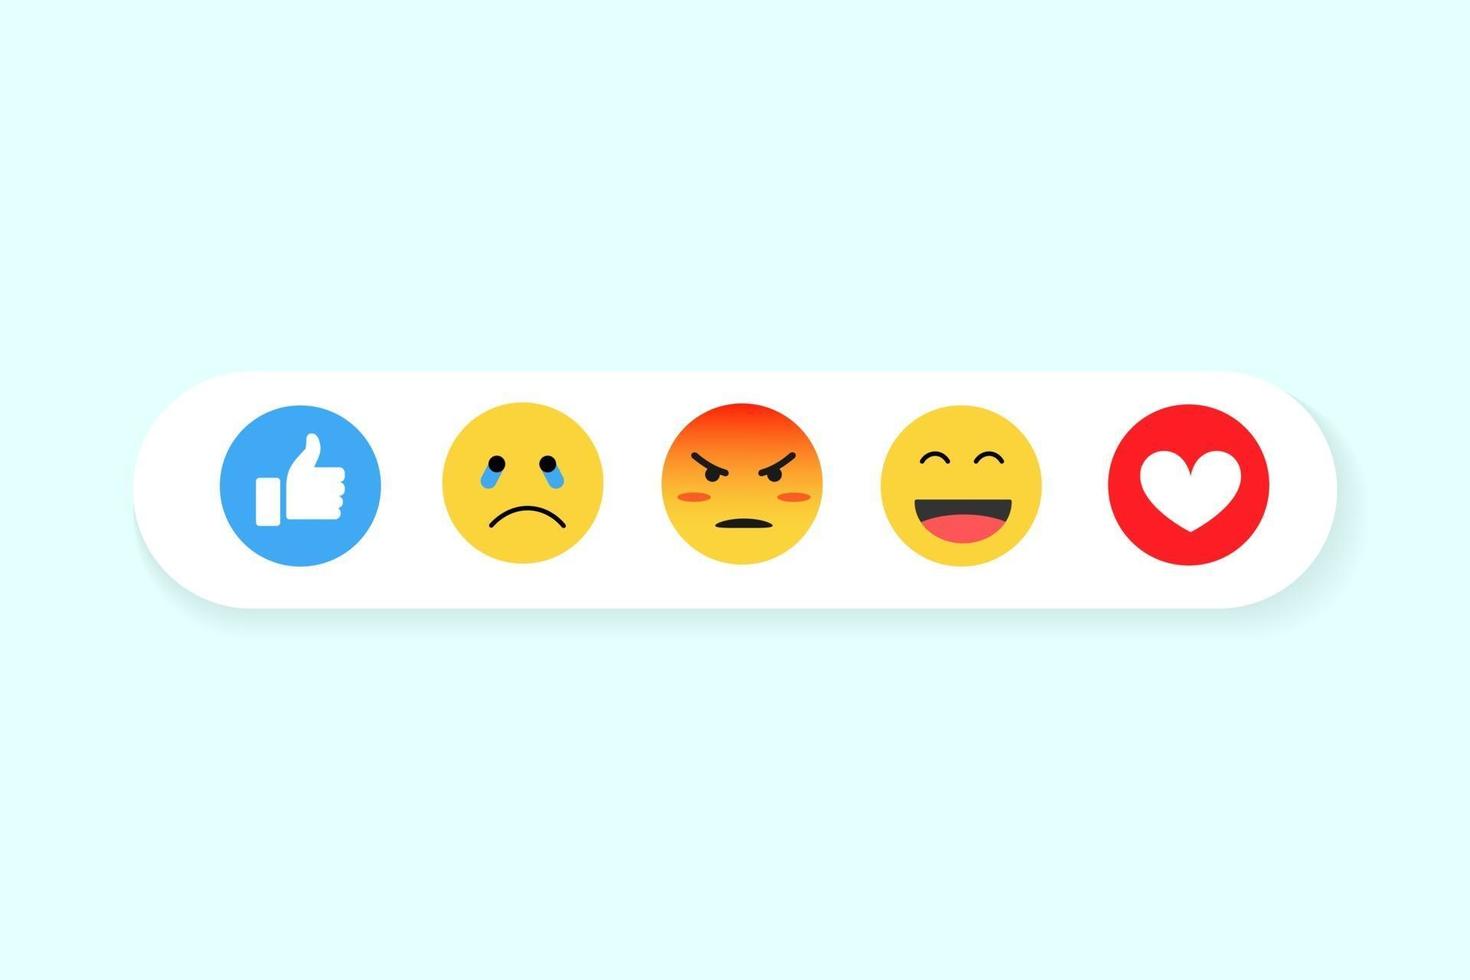 Diseño de icono de emoji con sonrisa, enojo, feliz y otra emoción de cara. vector